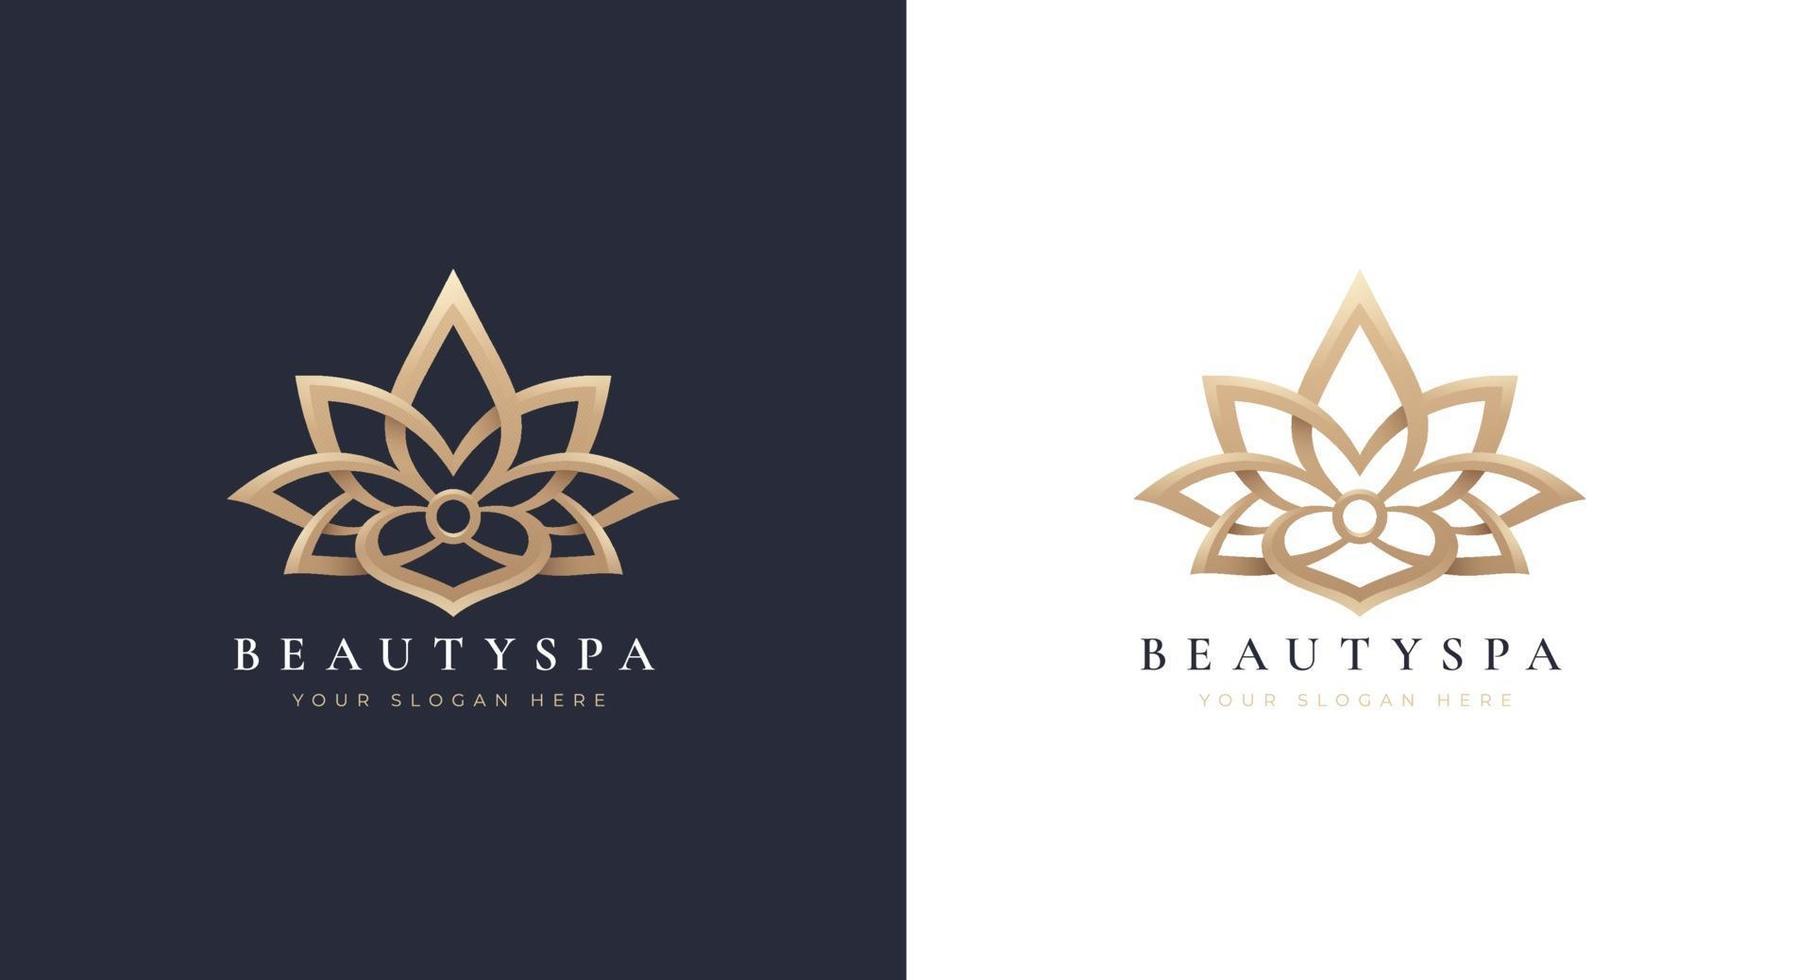 luxe lotus logo-ontwerp vector